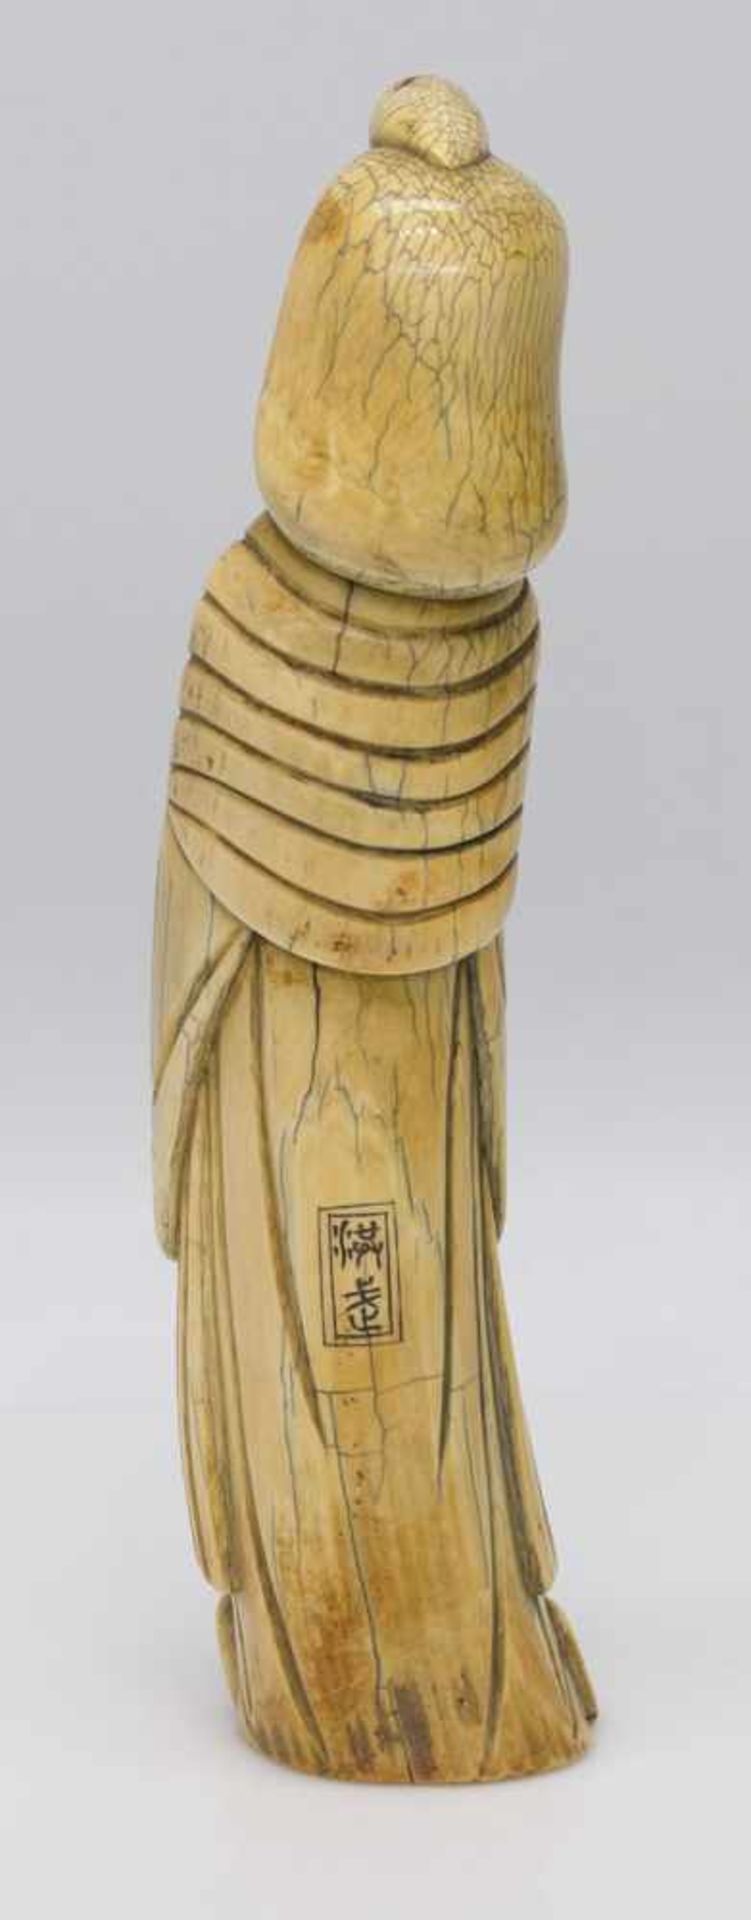 Asiatischer DildoJapan 19. Jh., Elfenbein geschnitzt in Form einer Geisha, verso signiert, H. 27 cm - Bild 2 aus 2